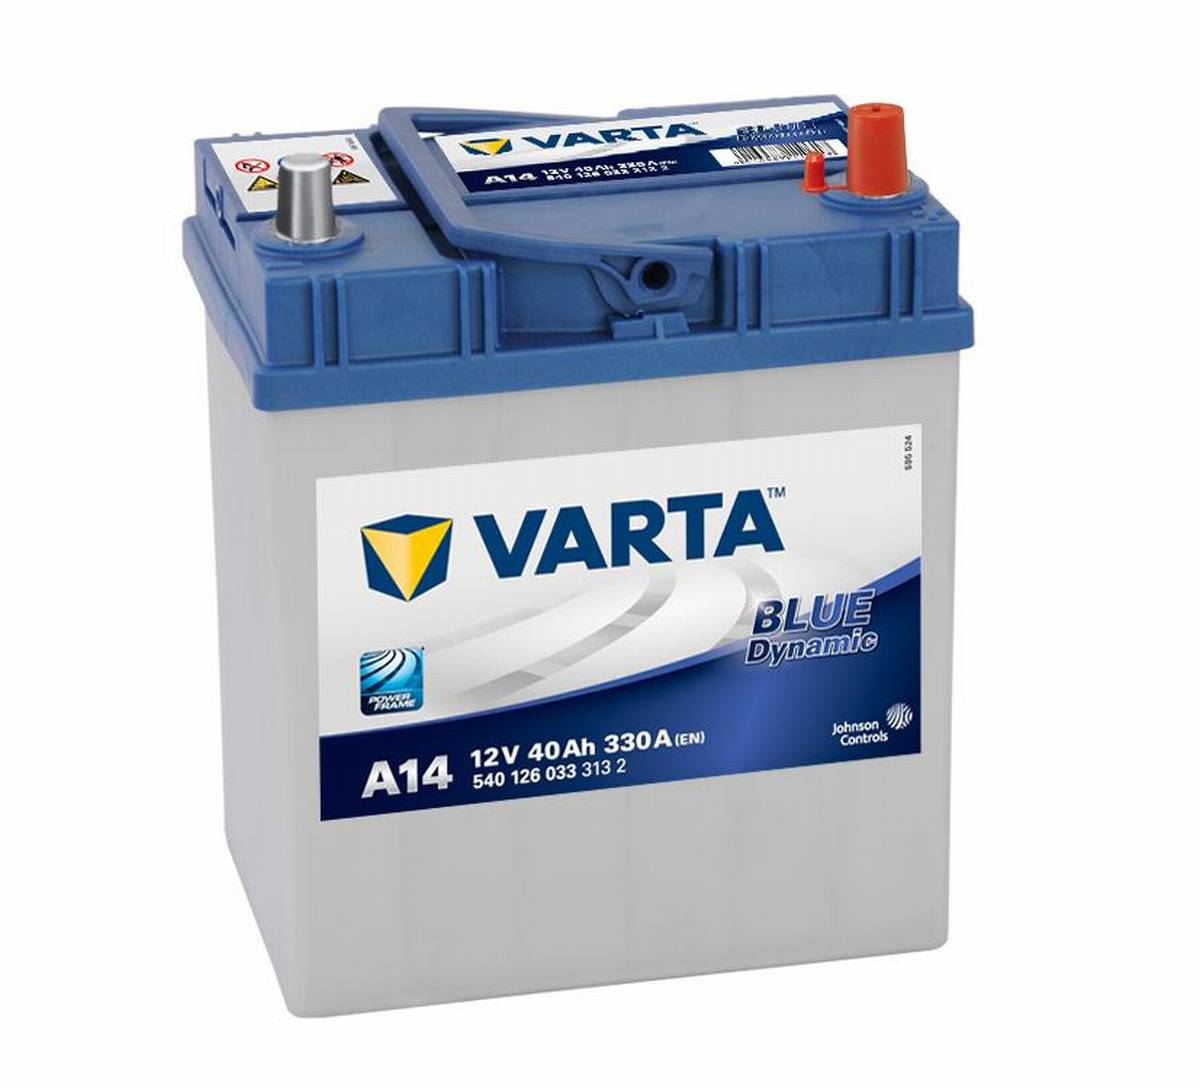 Varta BLUE Dynamic 540 126 033 3132 A14 12Volt 40Ah 330A/EN car battery, Starter batteries, Boots & Marine, Batteries by application